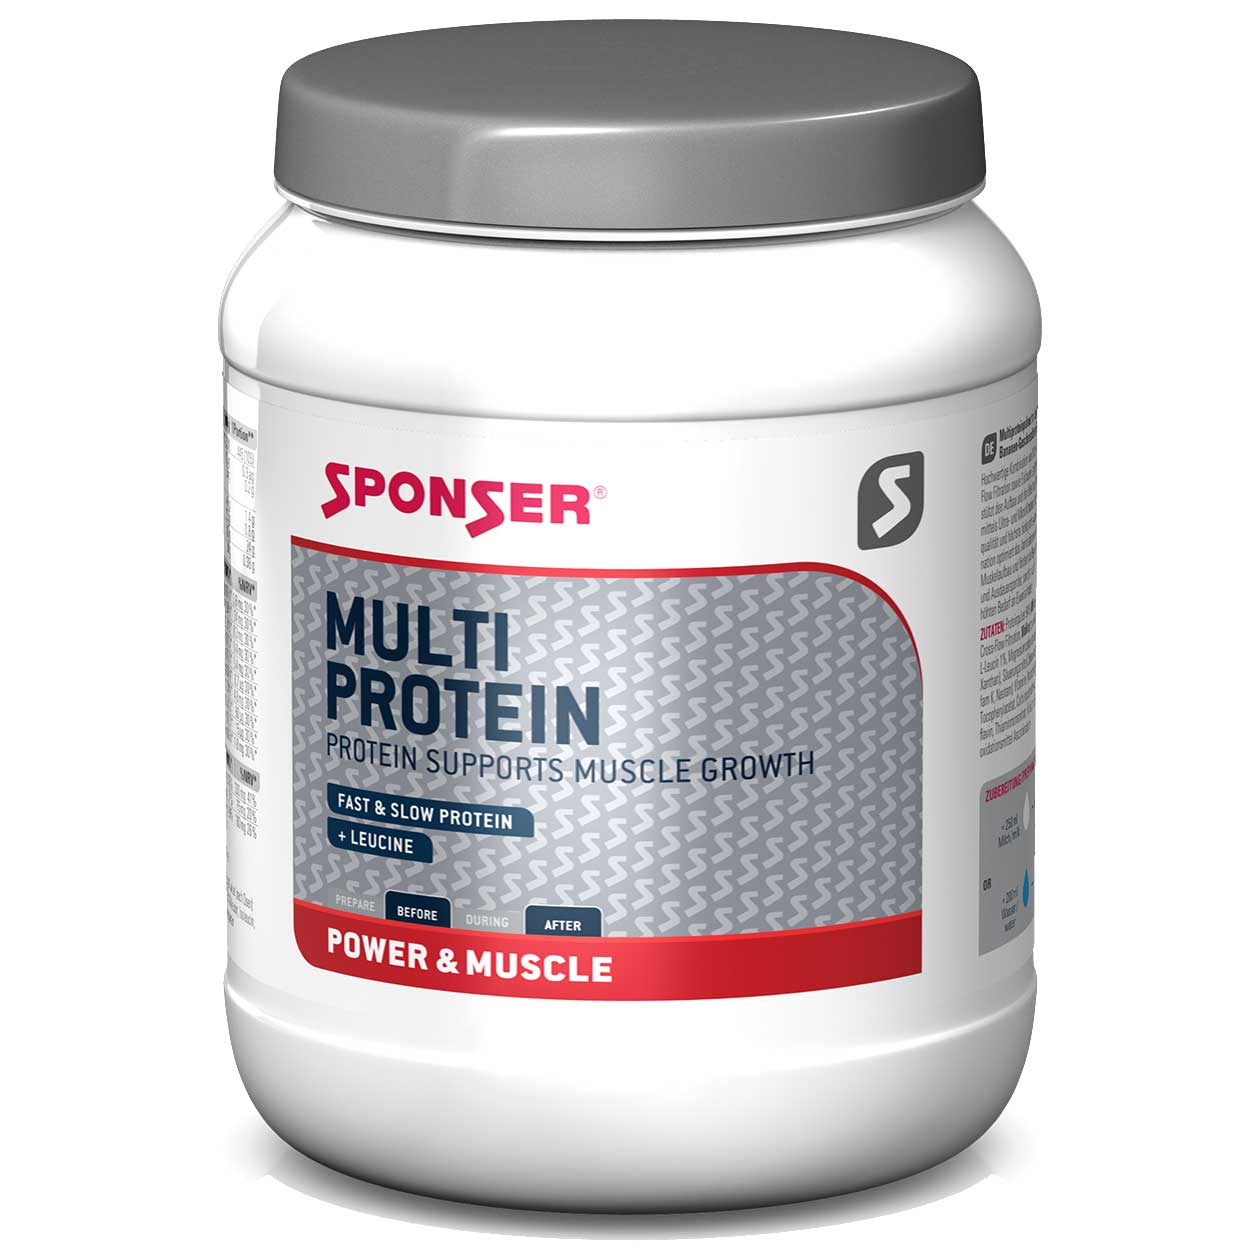 Produktbild von SPONSER Multi Protein - Mehrkomponenten-Eiweiß-Getränkepulver - 425g